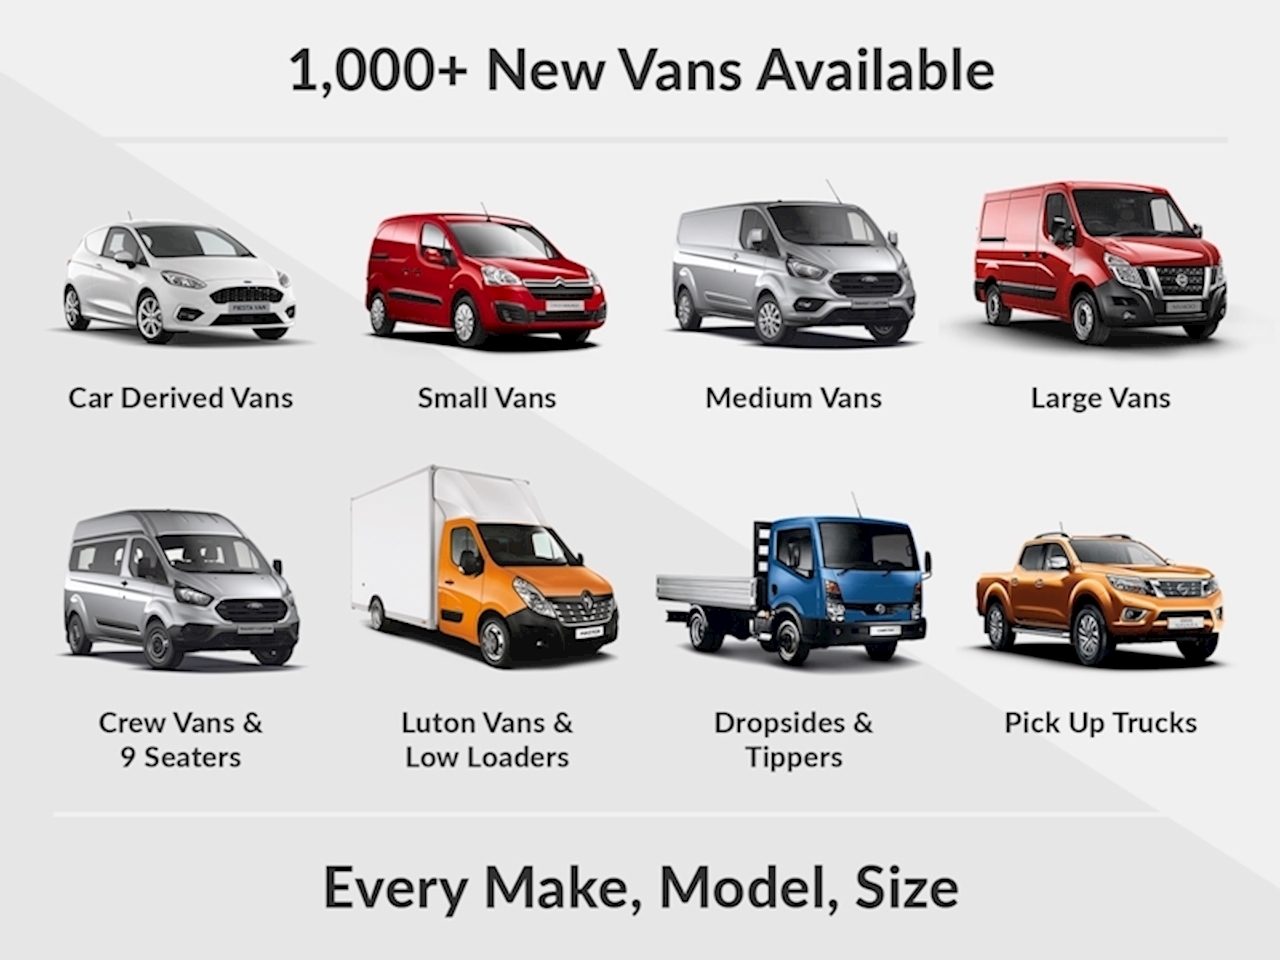 E Deliver 9 New Van 2.0 ELECTRIC VAN A